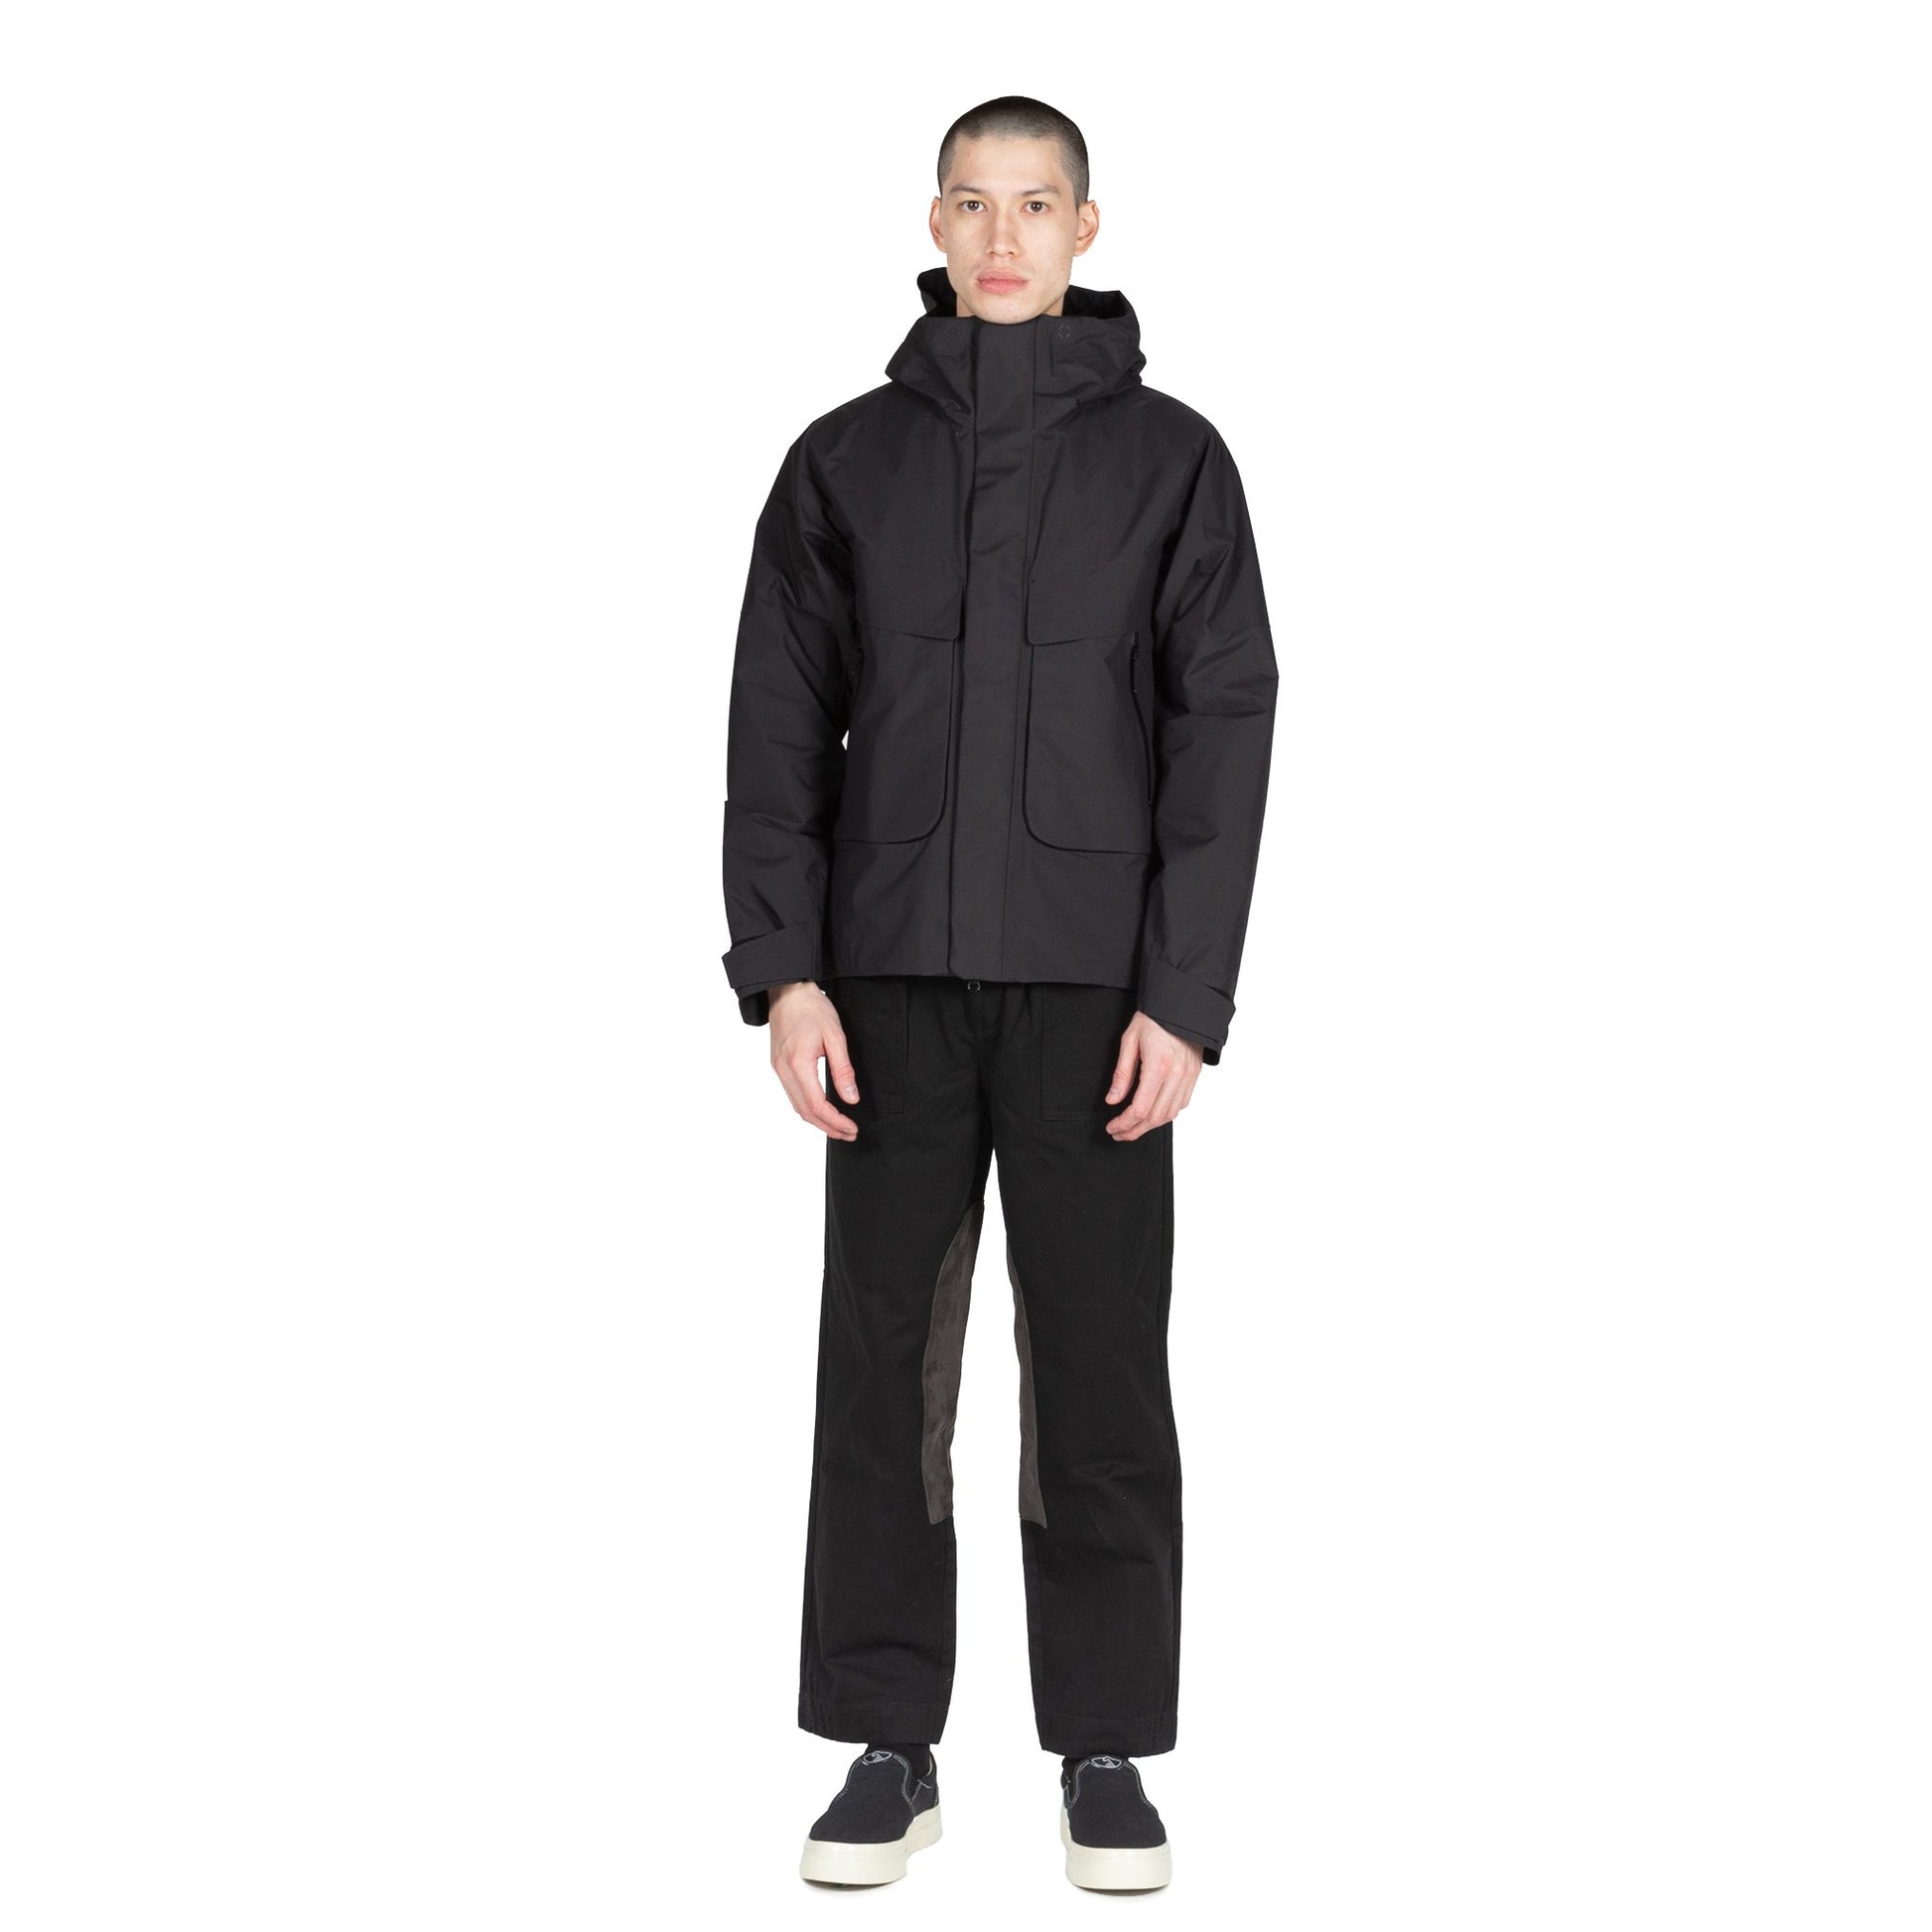 Goldwin Insulation Mountain Parka in Black hooded jacket sportswear all weather rain gear